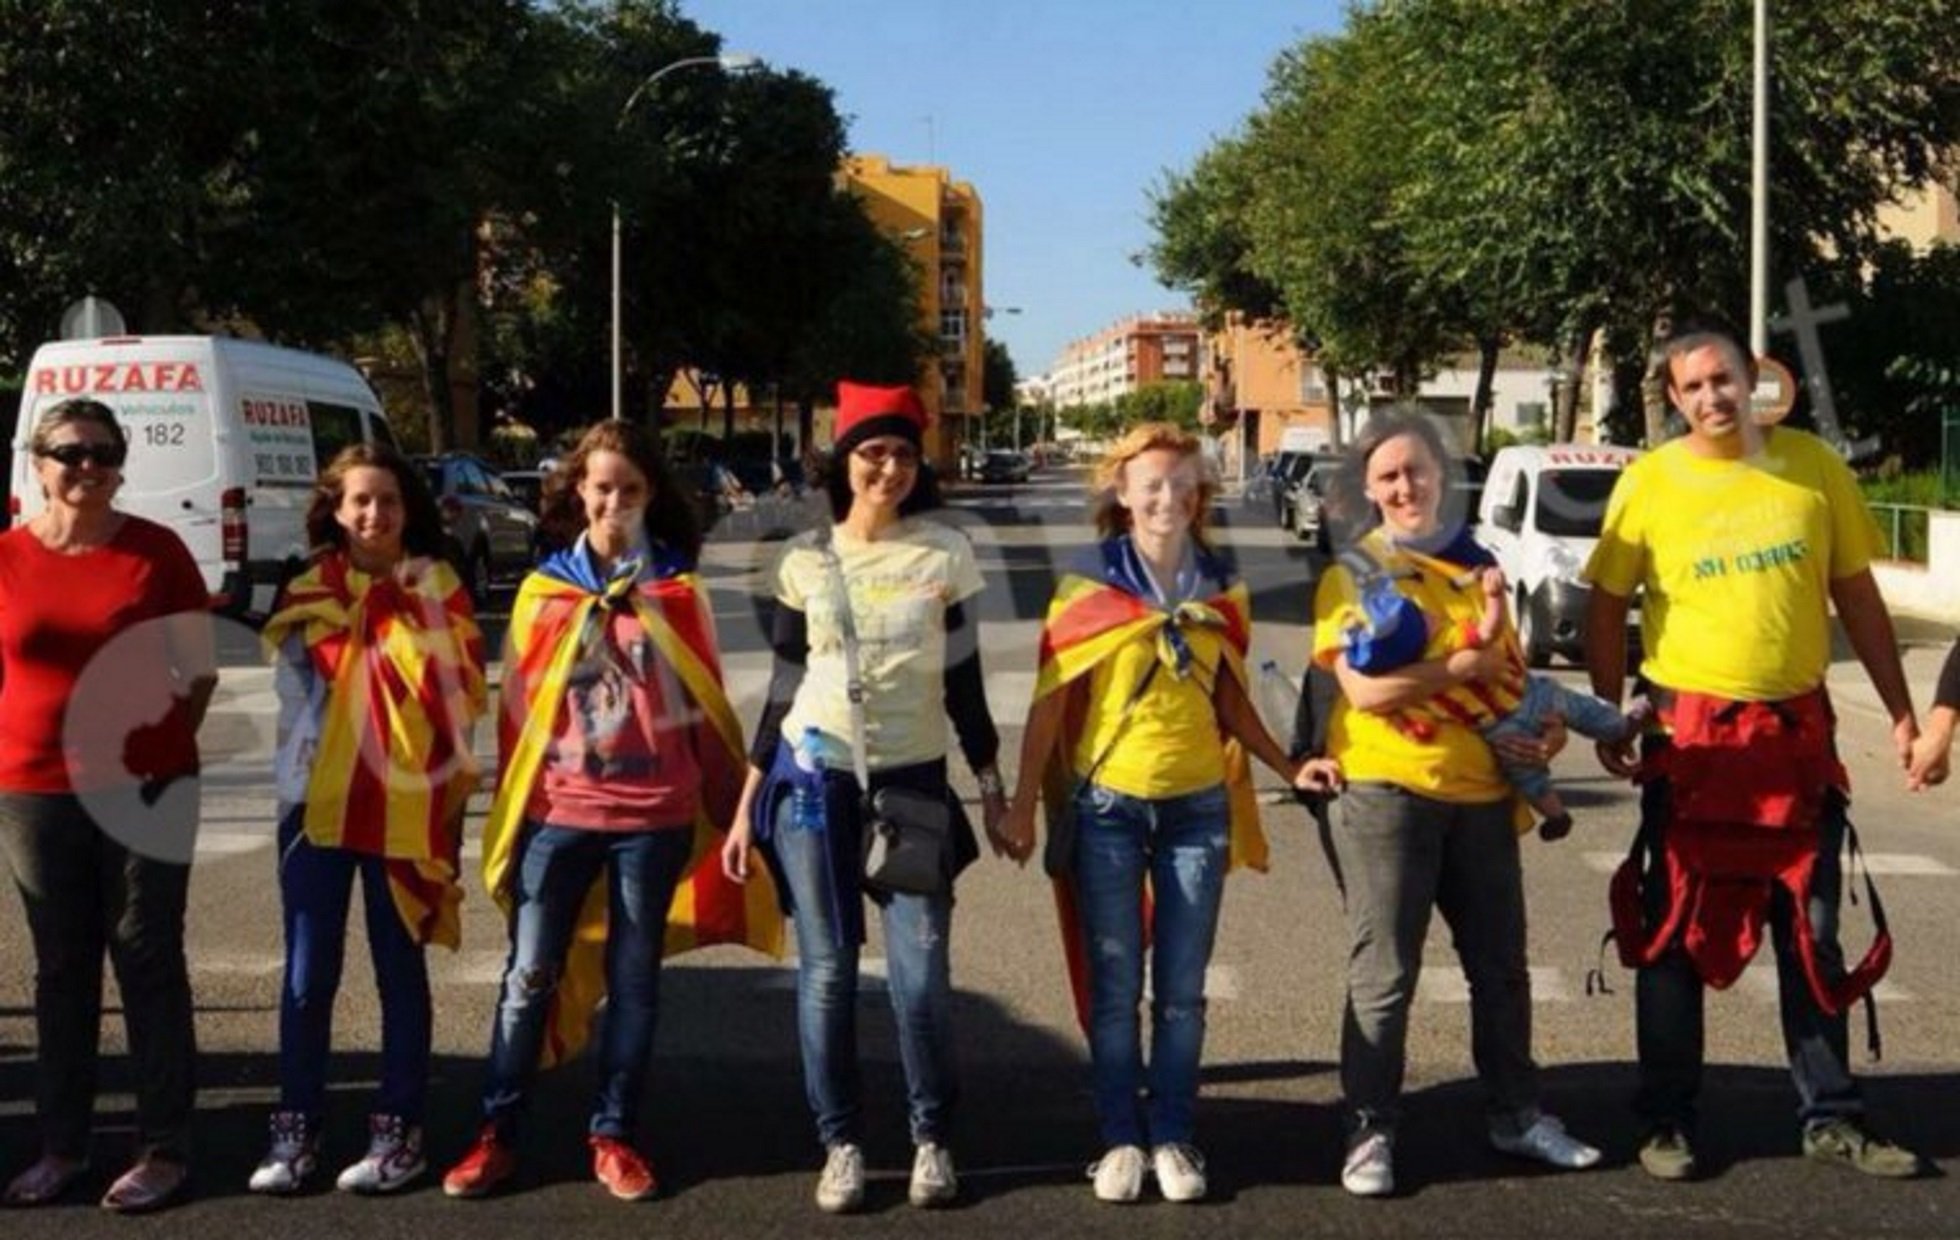 Lorena Roldán, d'assistir a la Via Catalana a criticar una estelada